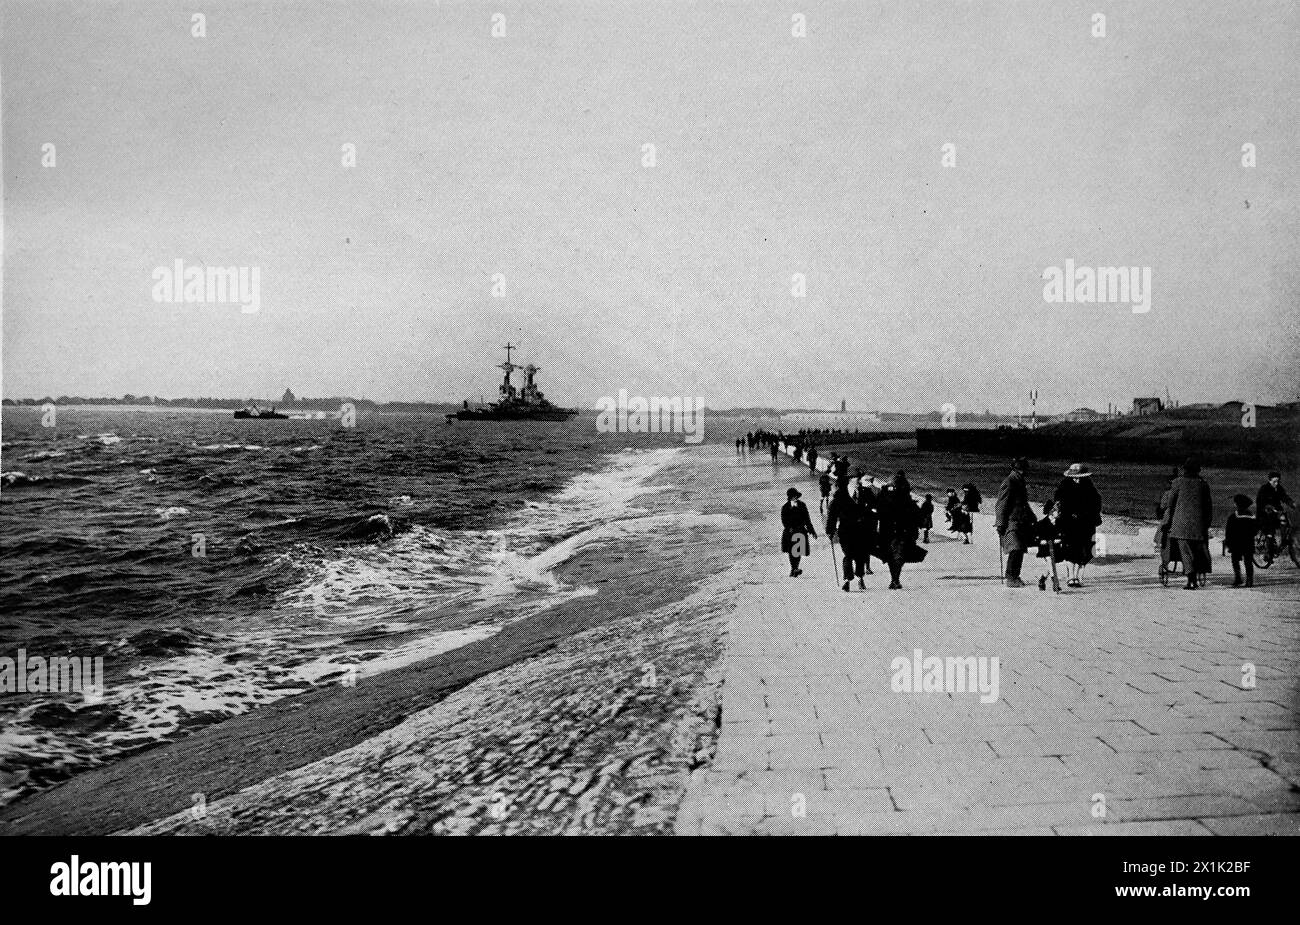 Ein Blick auf die Southsea Promenade mit dem Kriegsschiff USS Colorado, das in den Hafen einfährt. Originalfoto von Russell und Sons, Southsea. Ursprünglich gedruckt und veröffentlicht für die Portsmouth and Southsea Improvement Association, 1924. Stockfoto